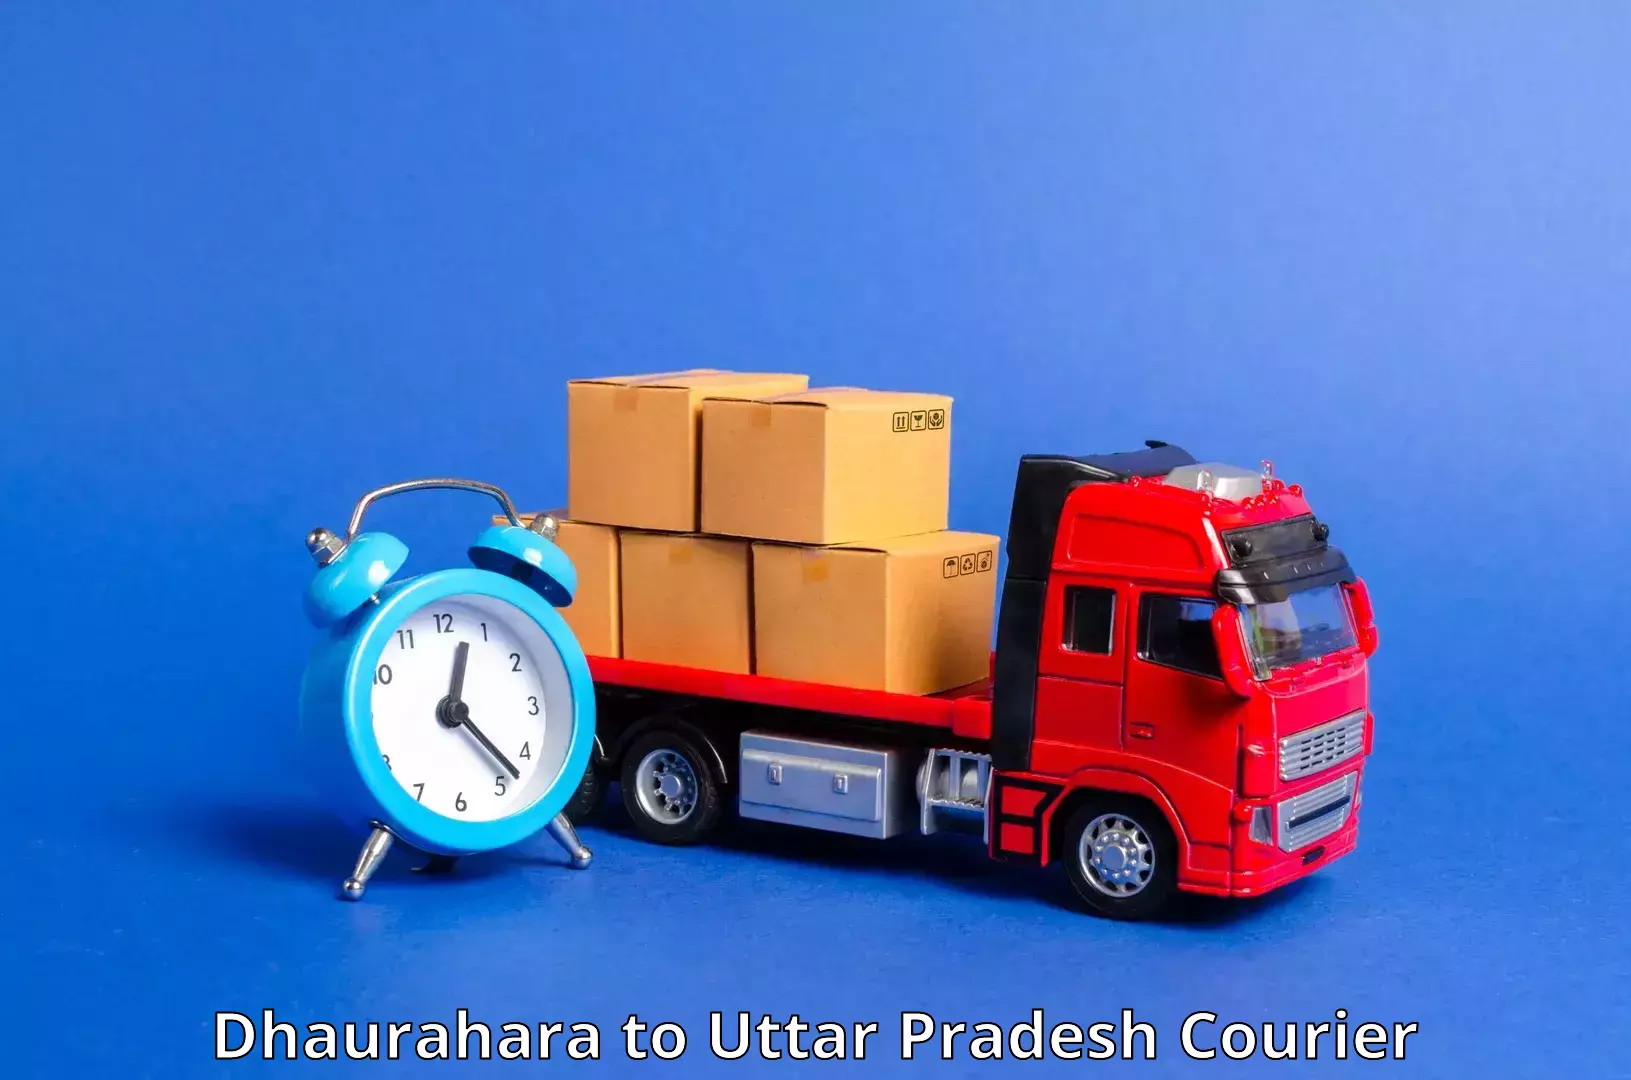 Weekend courier service Dhaurahara to Faridpur